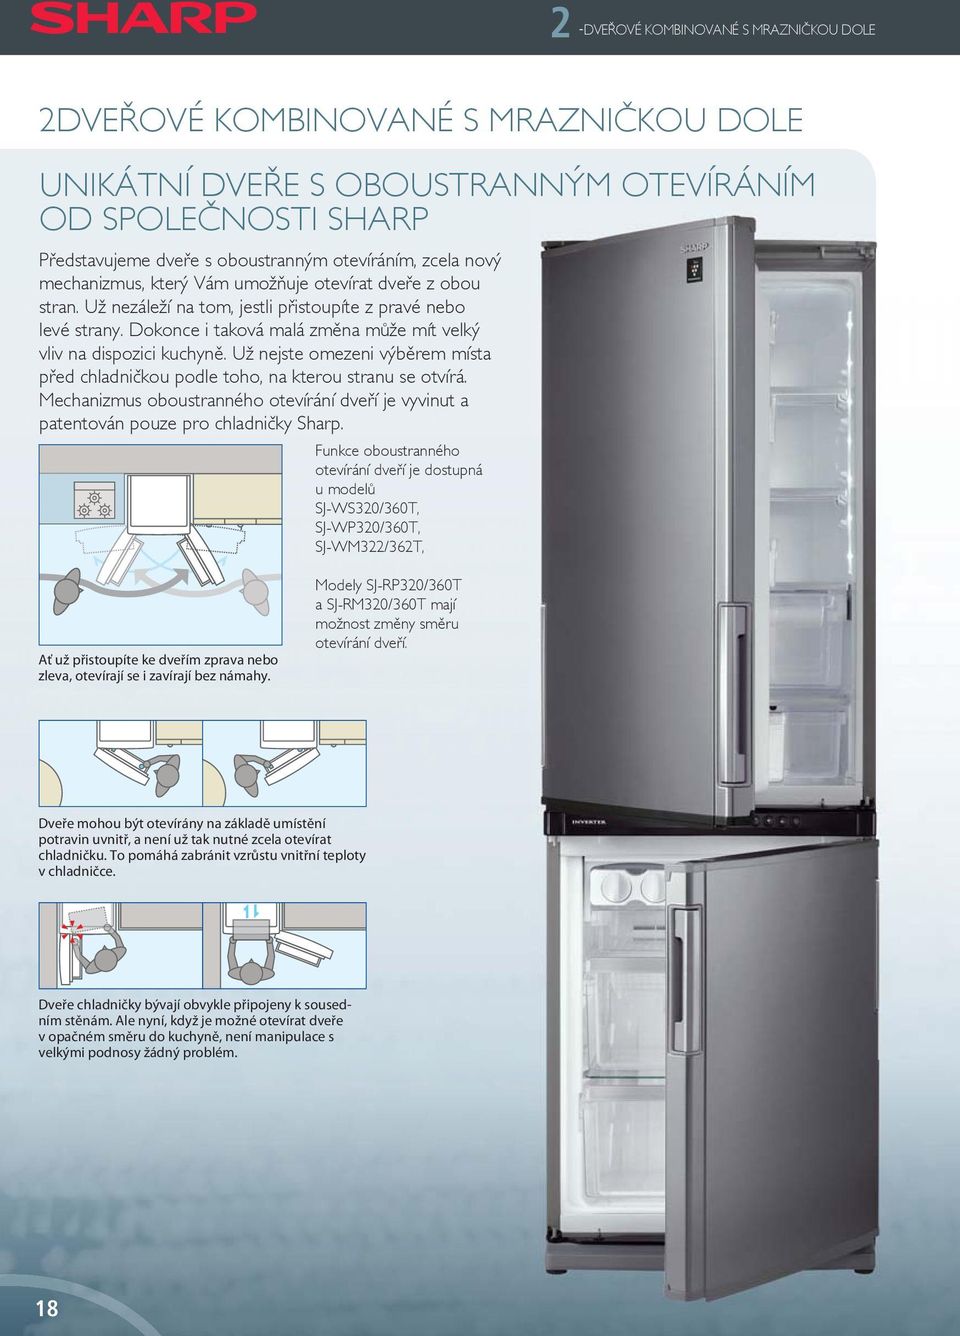 Už nejste omezeni výběrem místa před chladničkou podle toho, na kterou stranu se otvírá. Mechanizmus oboustranného otevírání dveří je vyvinut a patentován pouze pro chladničky Sharp.